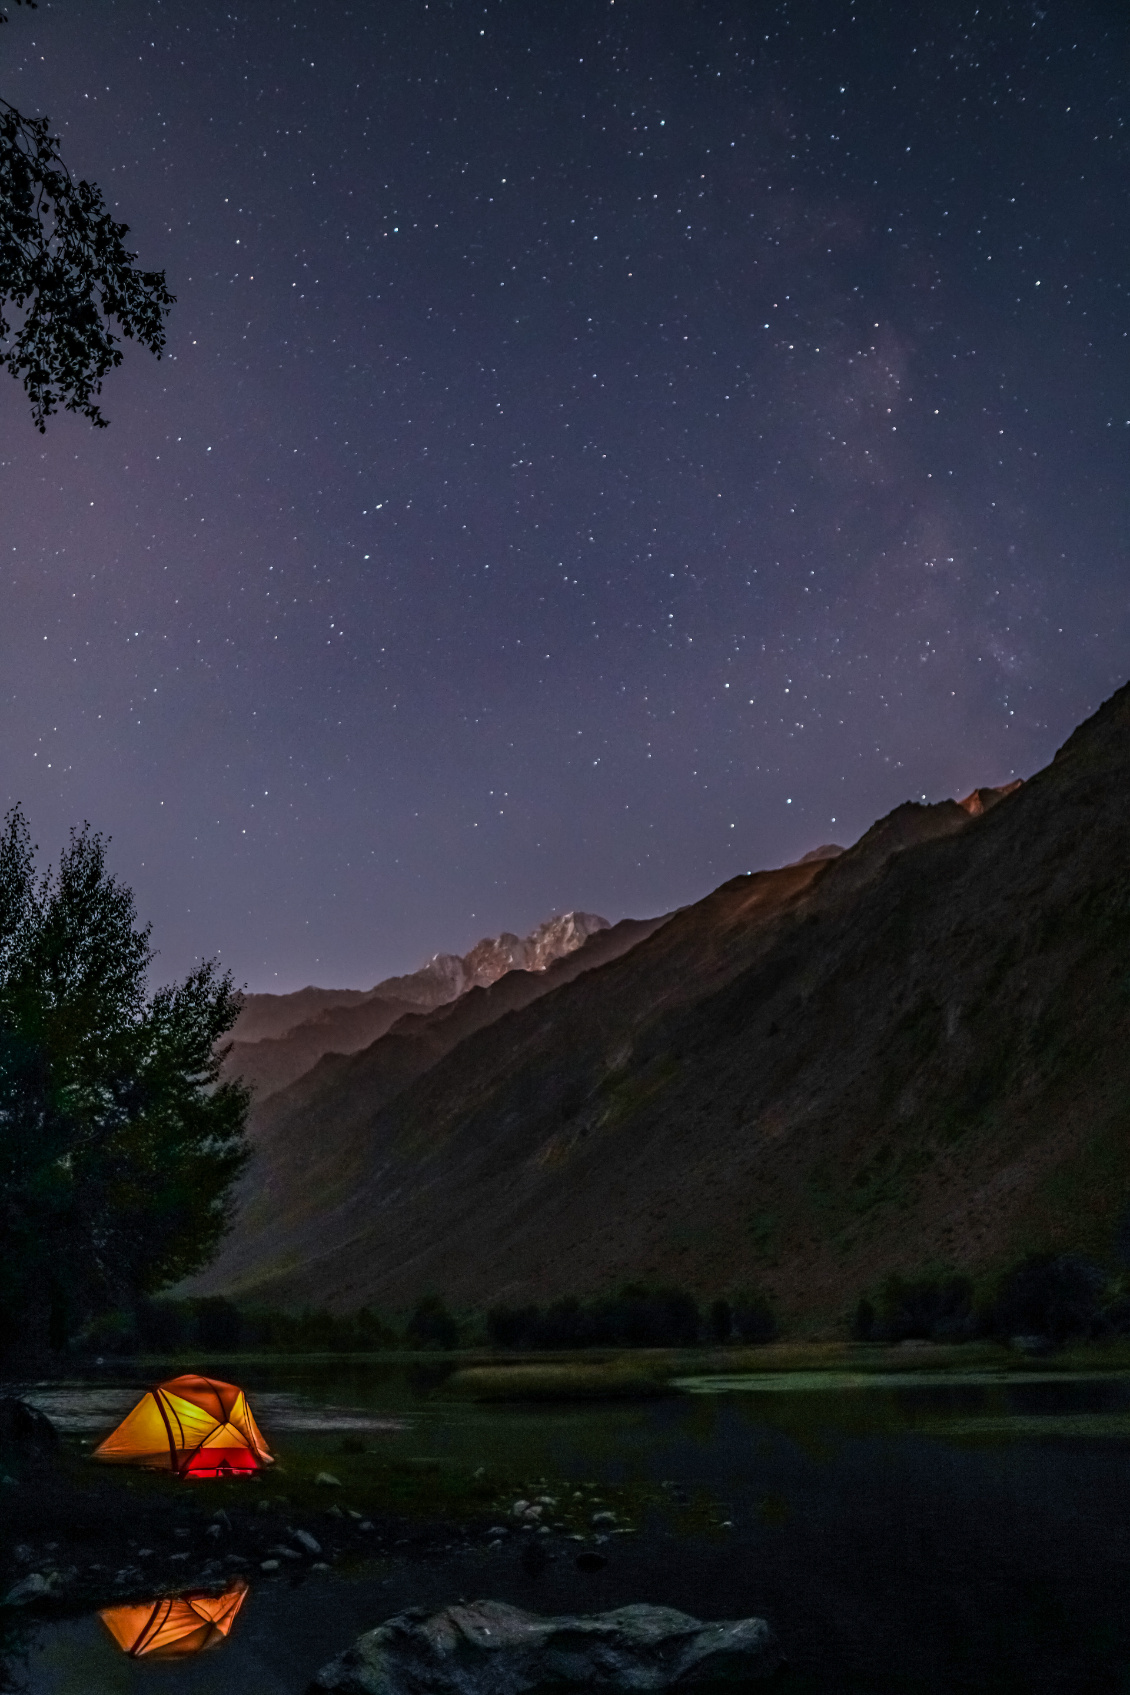 Matthieu Sion.
@matthieu_sion
Lac étoilé. Itinérance dans les vallées sinueuses du Tadjikistan. Un lac et ses majestueuses montagnes se dévoilent sous la lueur des étoiles.